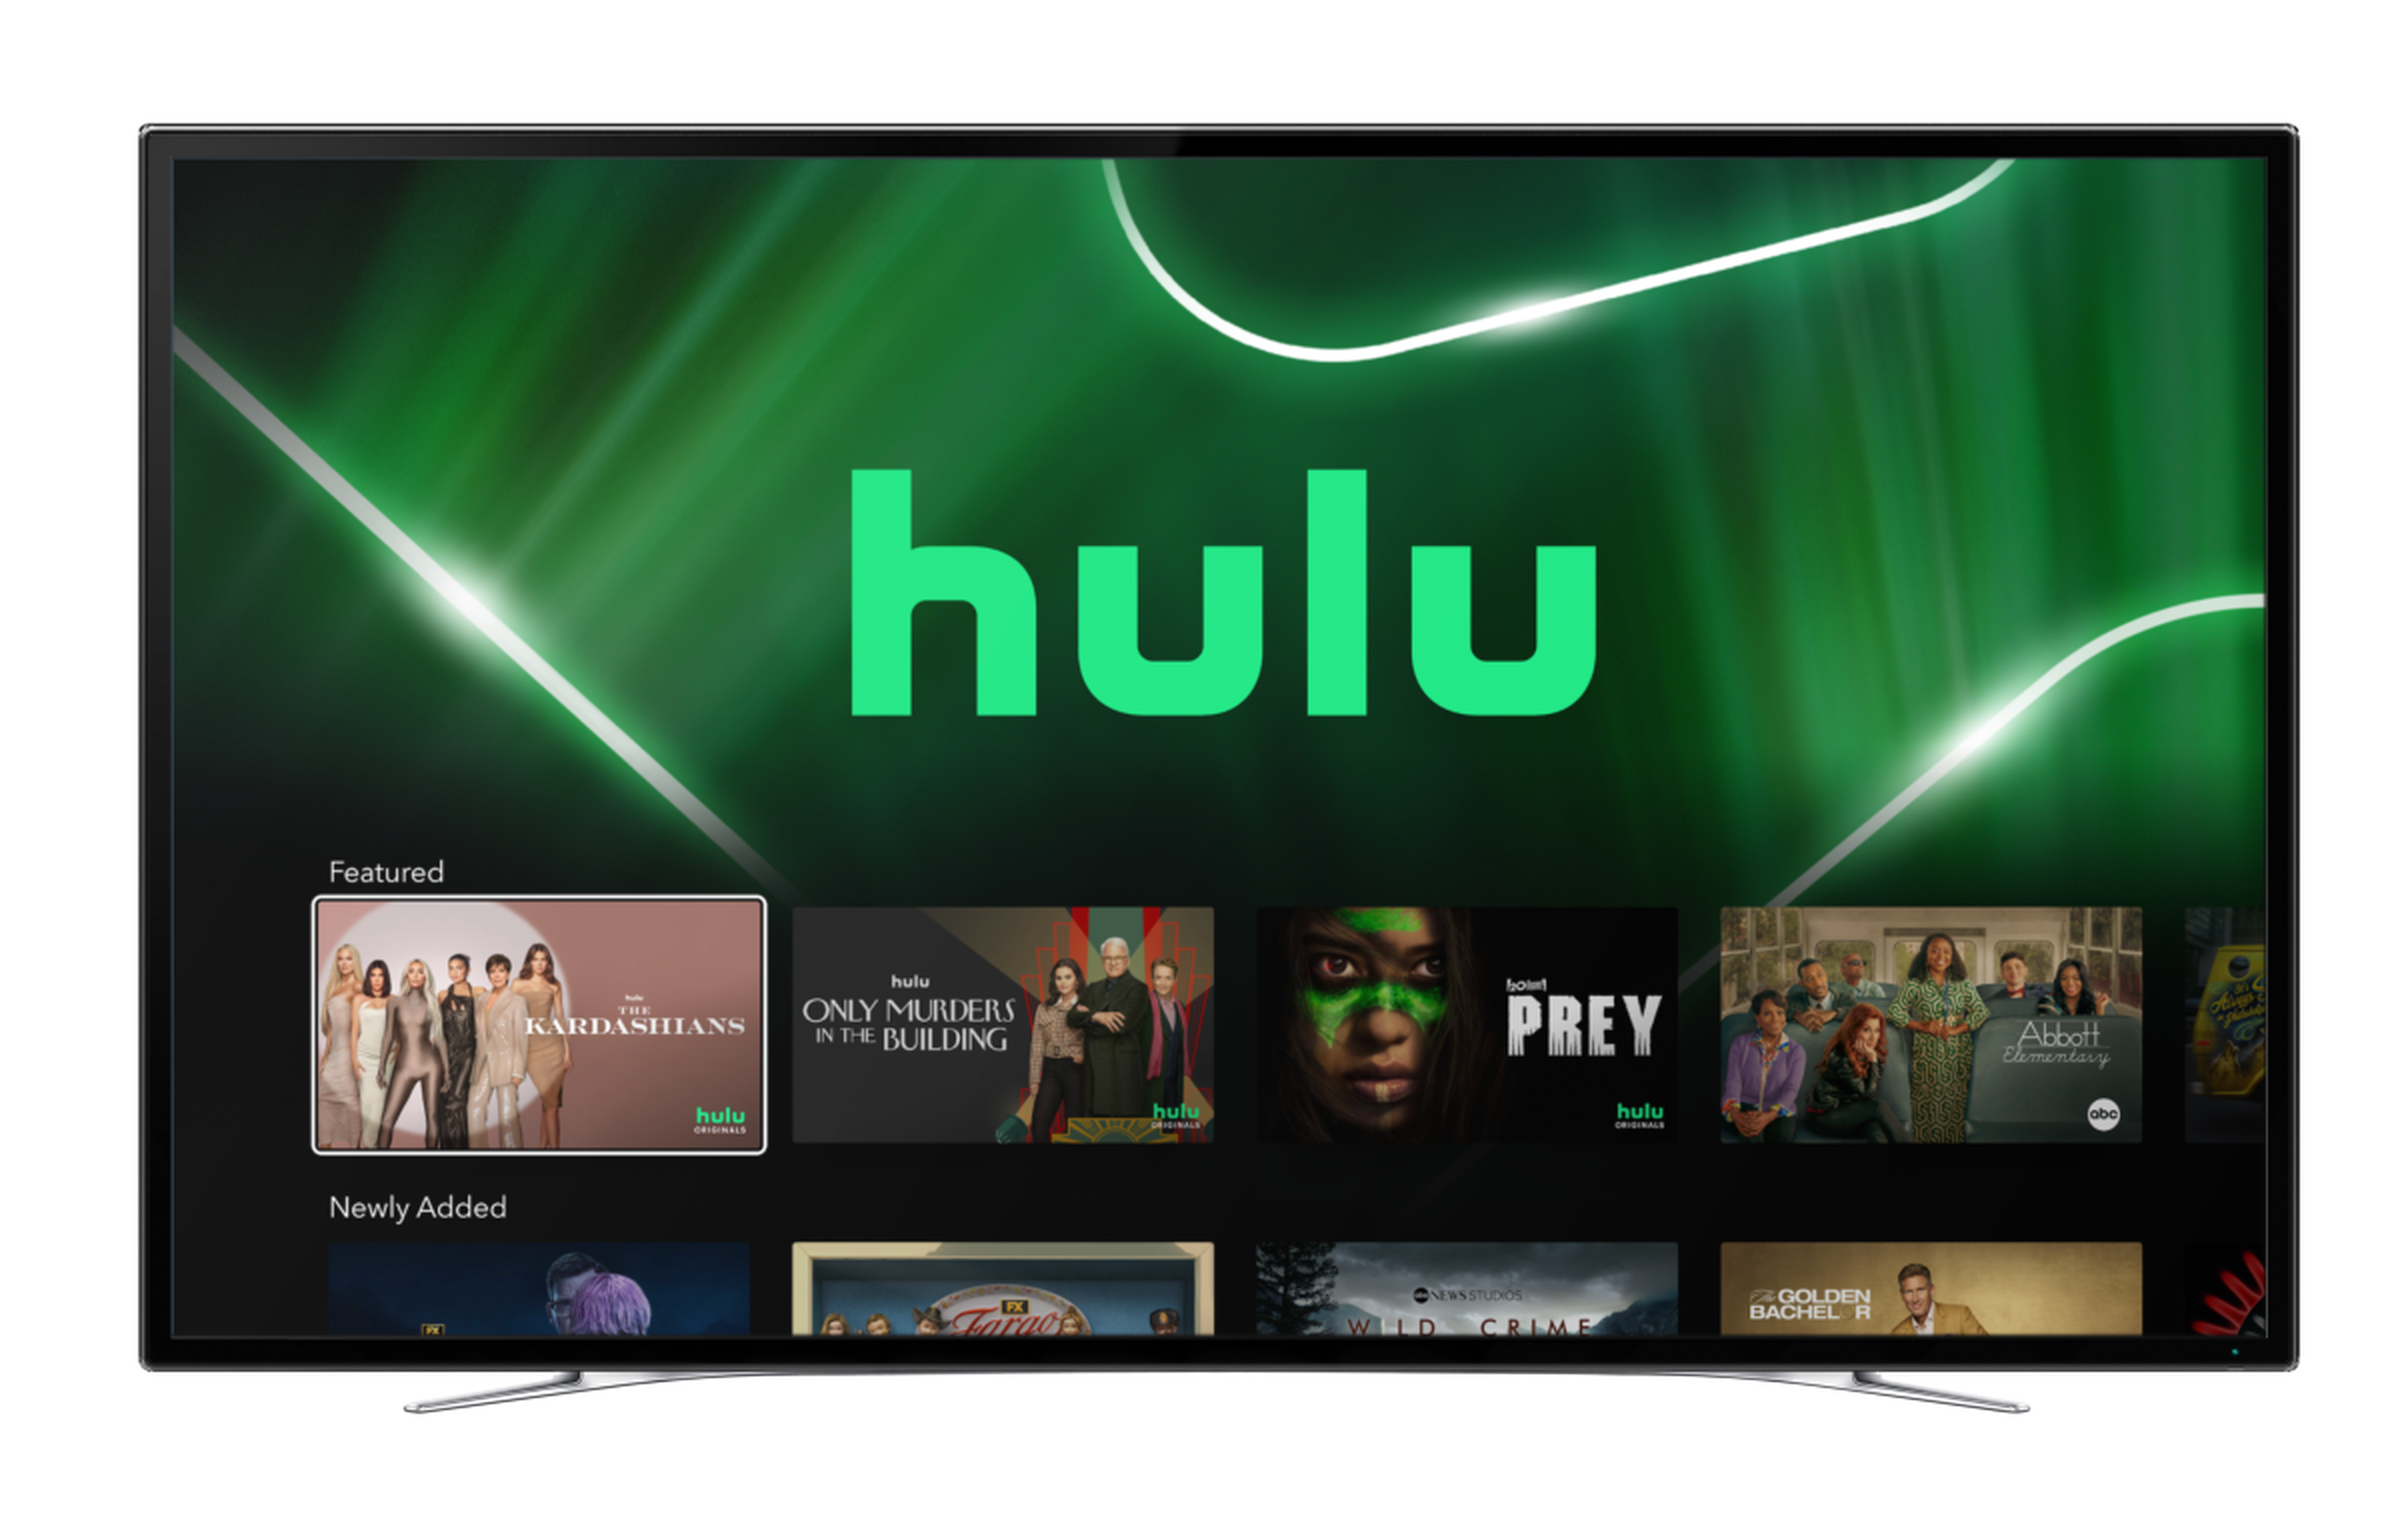 Hulu on Disney Plus doesn’t include Hulu’s full library.